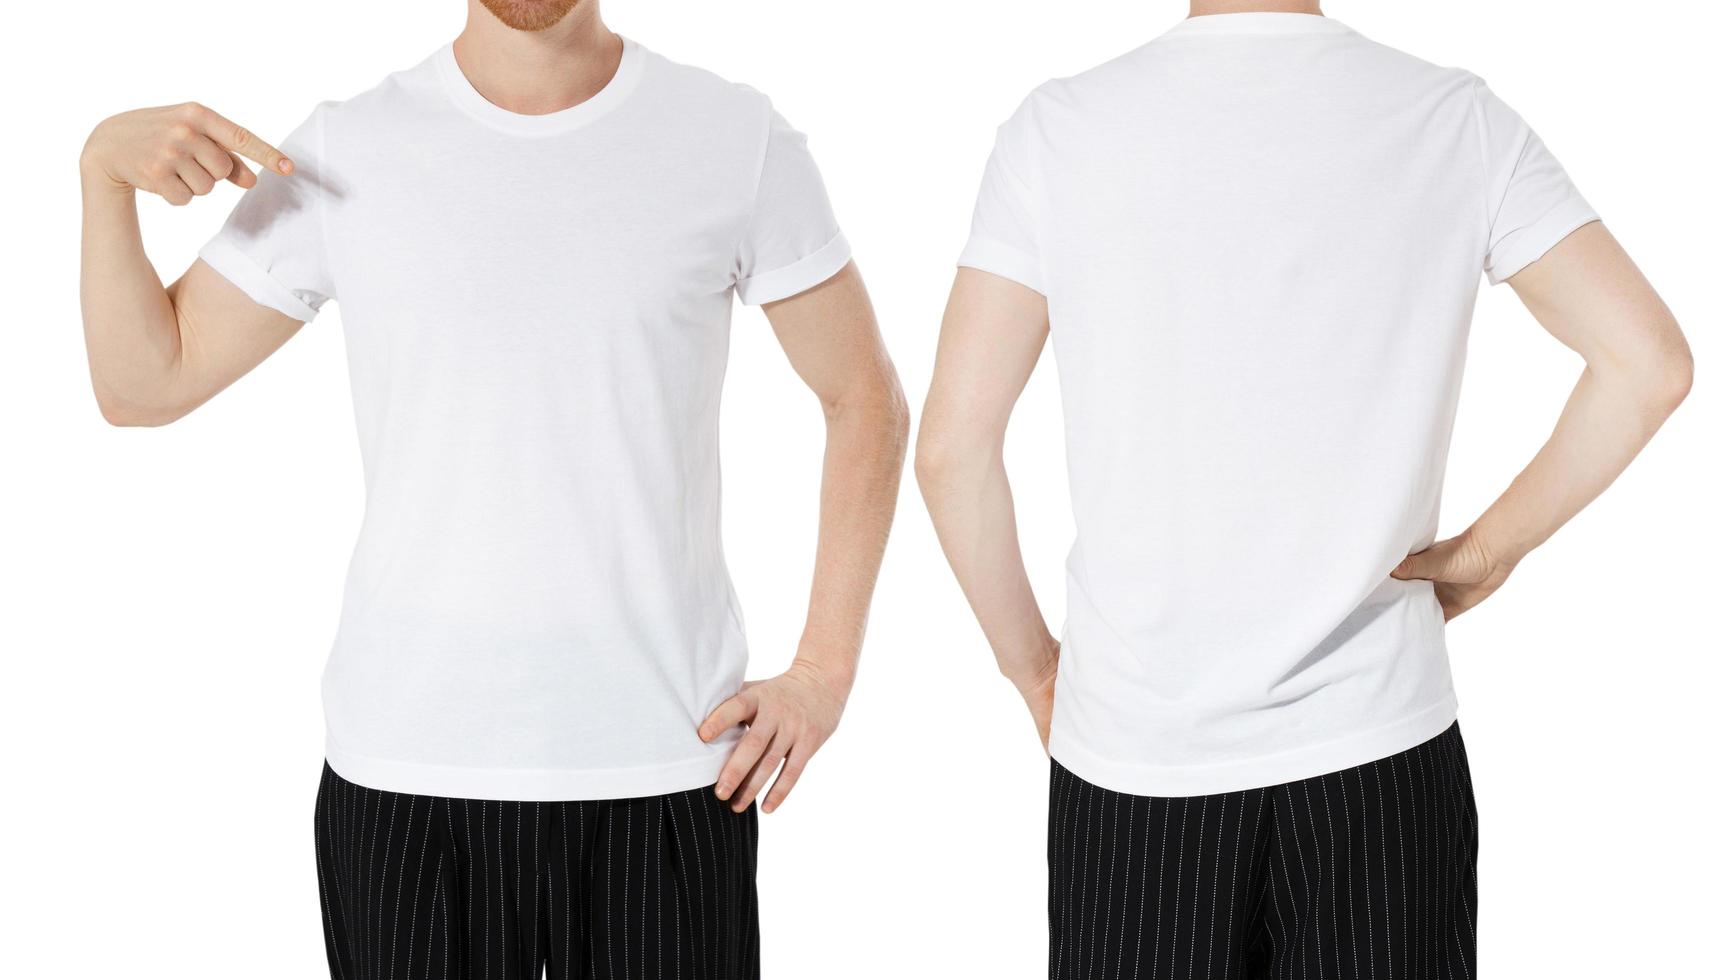 kaukasisk man och i vita t-shirts isolerad på vit bakgrund foto